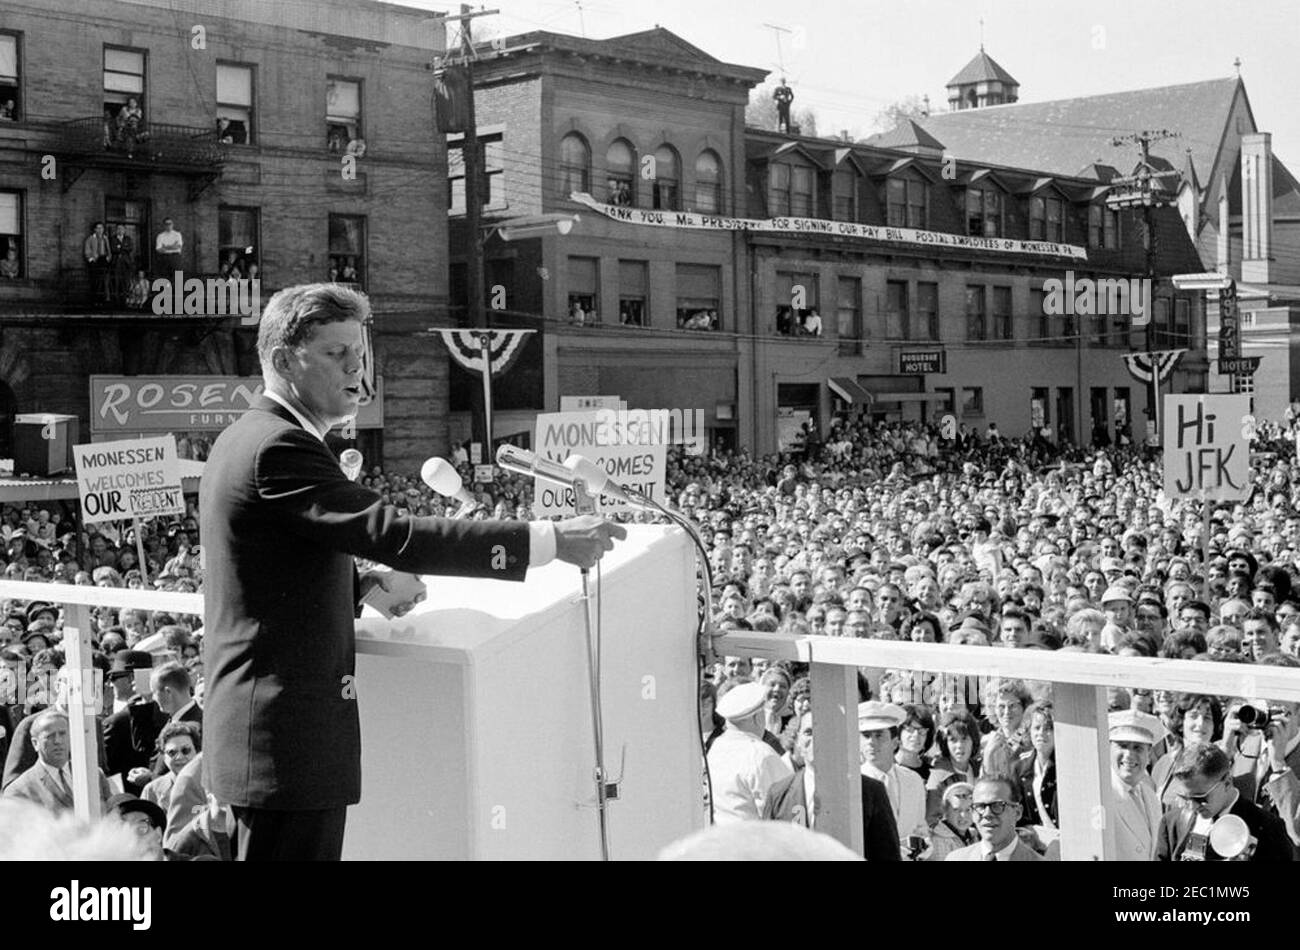 Voyage de campagne du Congrès : Monessen, Pennsylvanie, rallye. Le président John F. Kennedy prononce un discours à l’occasion d’un rassemblement de campagne du Congrès à Monessen, en Pennsylvanie. Banque D'Images